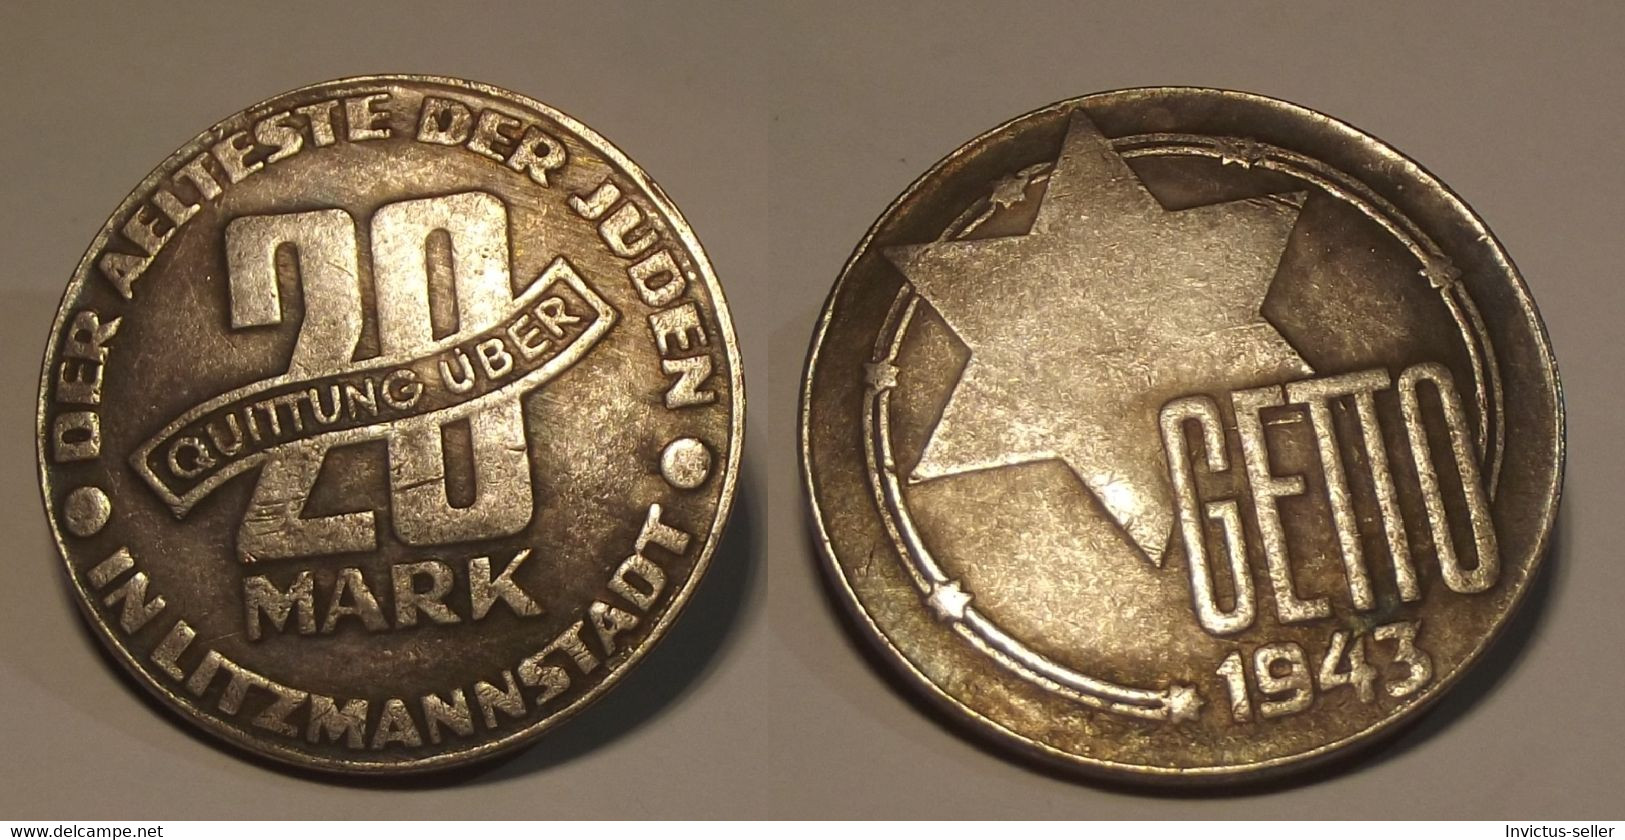 GETTO 20 MARK 1943 LITZMANNSTADT GERMAN COIN MONETA GHETTO EBREI JUDE JUIFE Auschwitz JUDE EBREI GERMANY - Colecciones